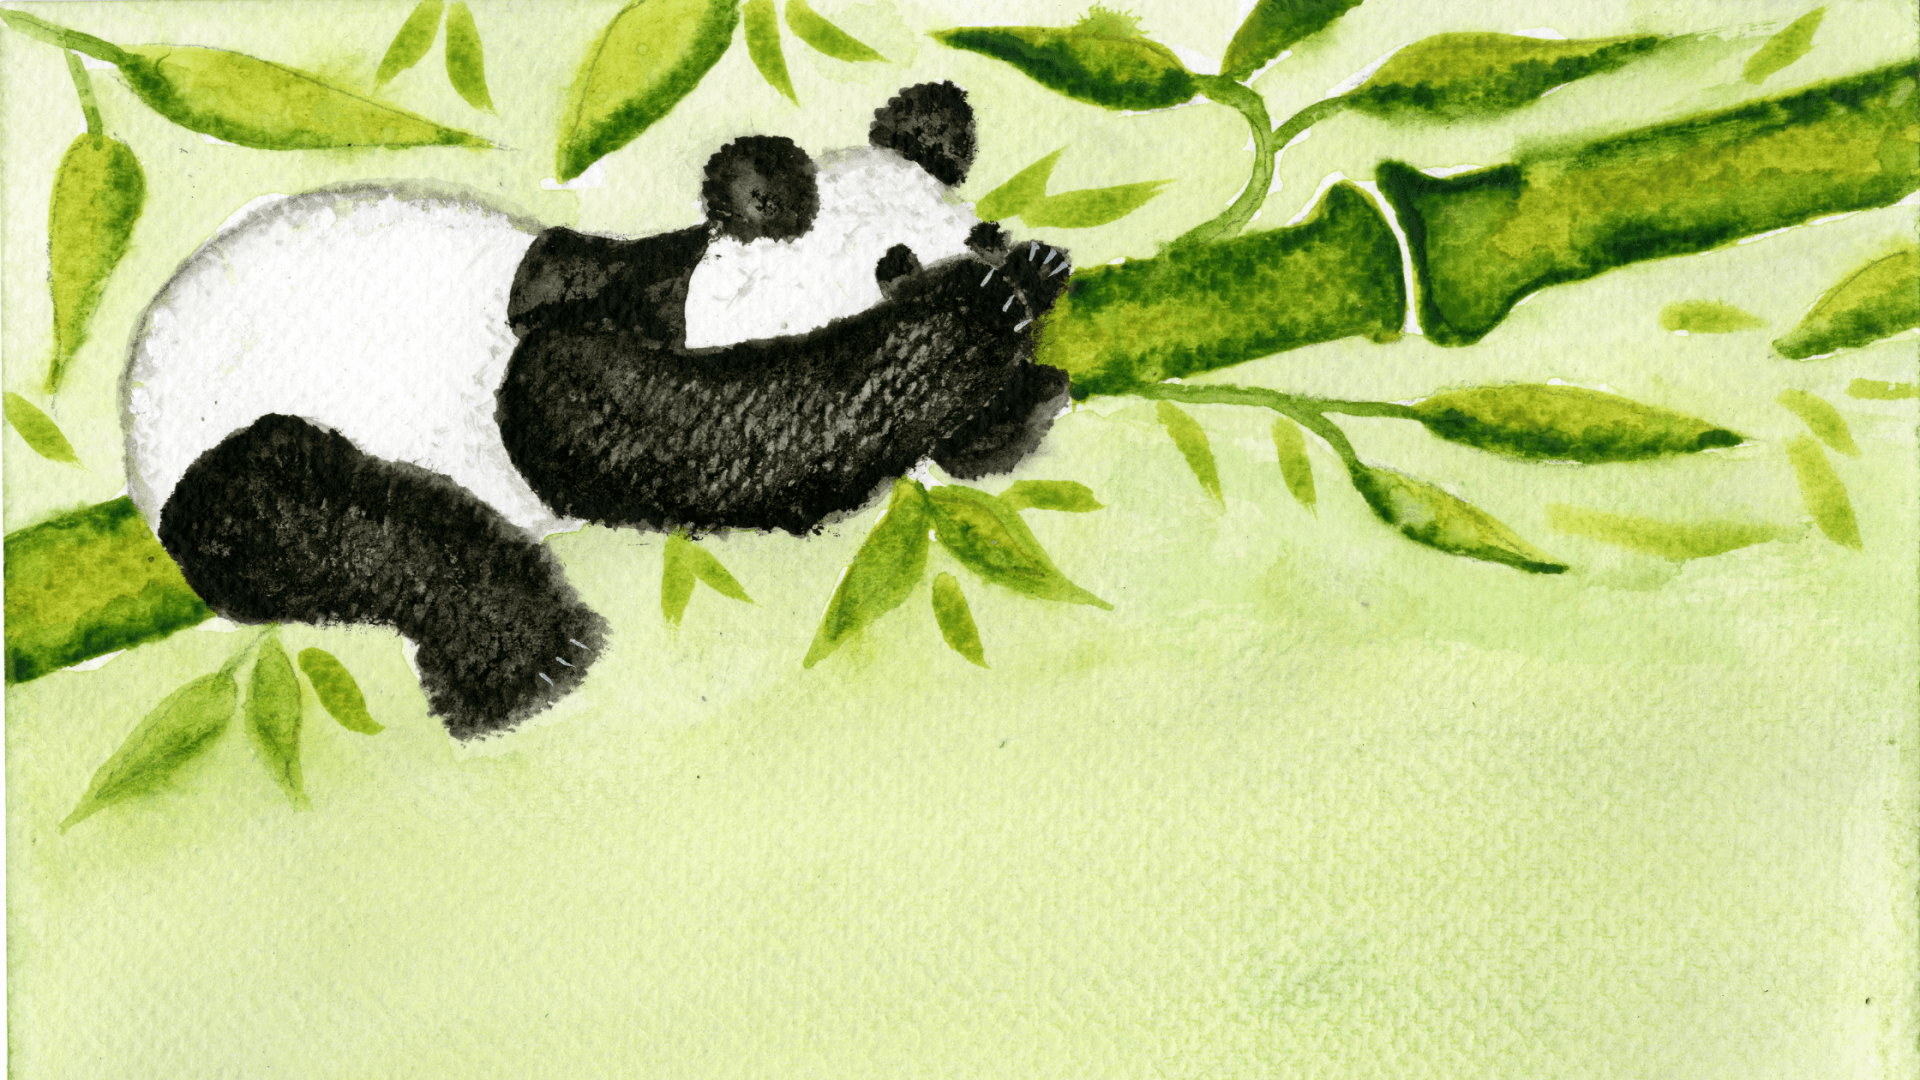 Panda in asleep in a tree